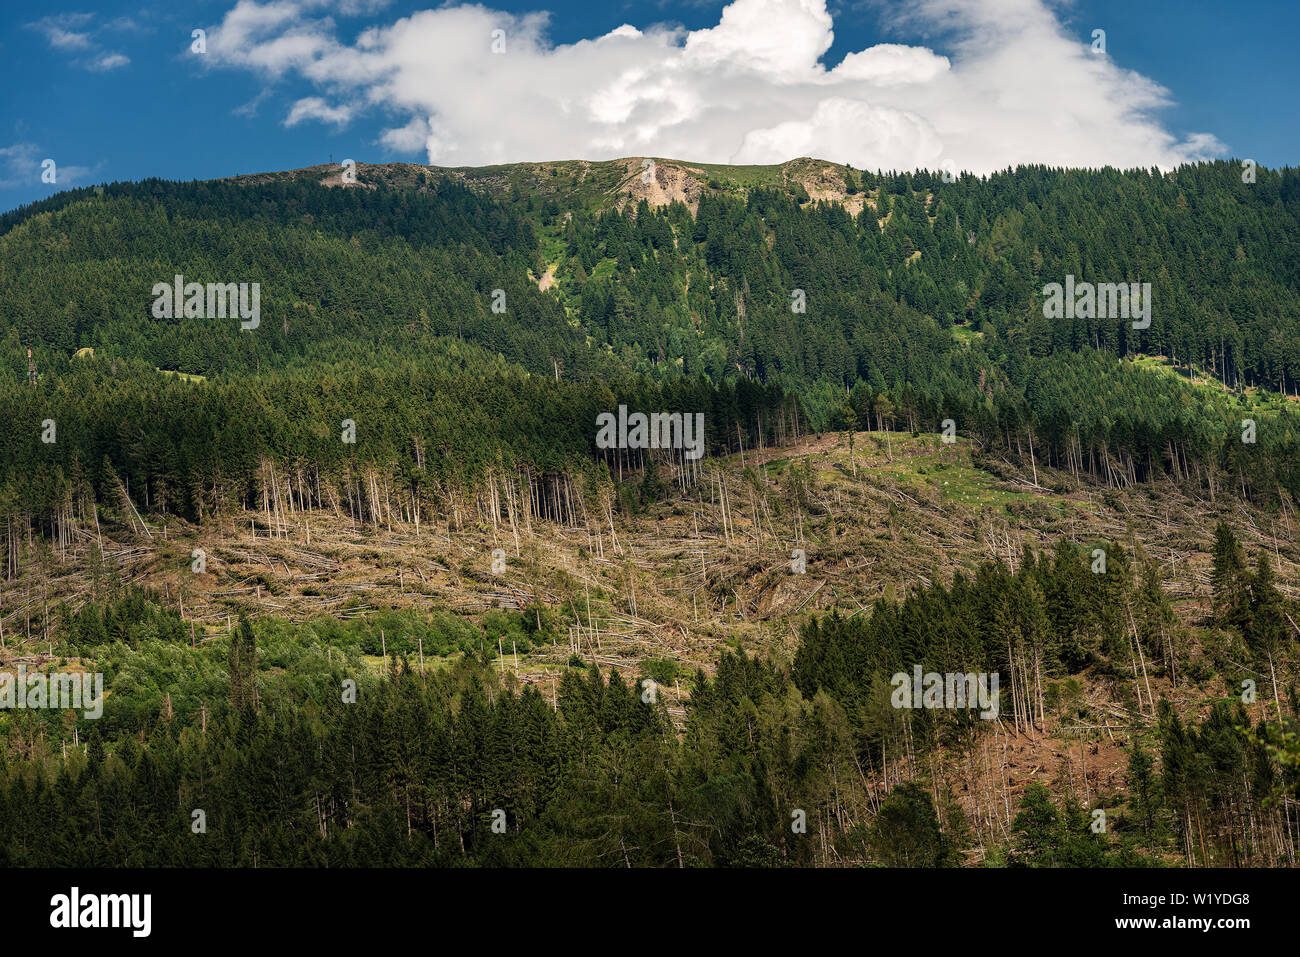 Wald mit Tausenden von Bäumen aufgrund der sehr starken Wind gefallen, November 2018, Baselga di Pine. Naturkatastrophe in Trentino Alto Adige, Italien, Stockfoto